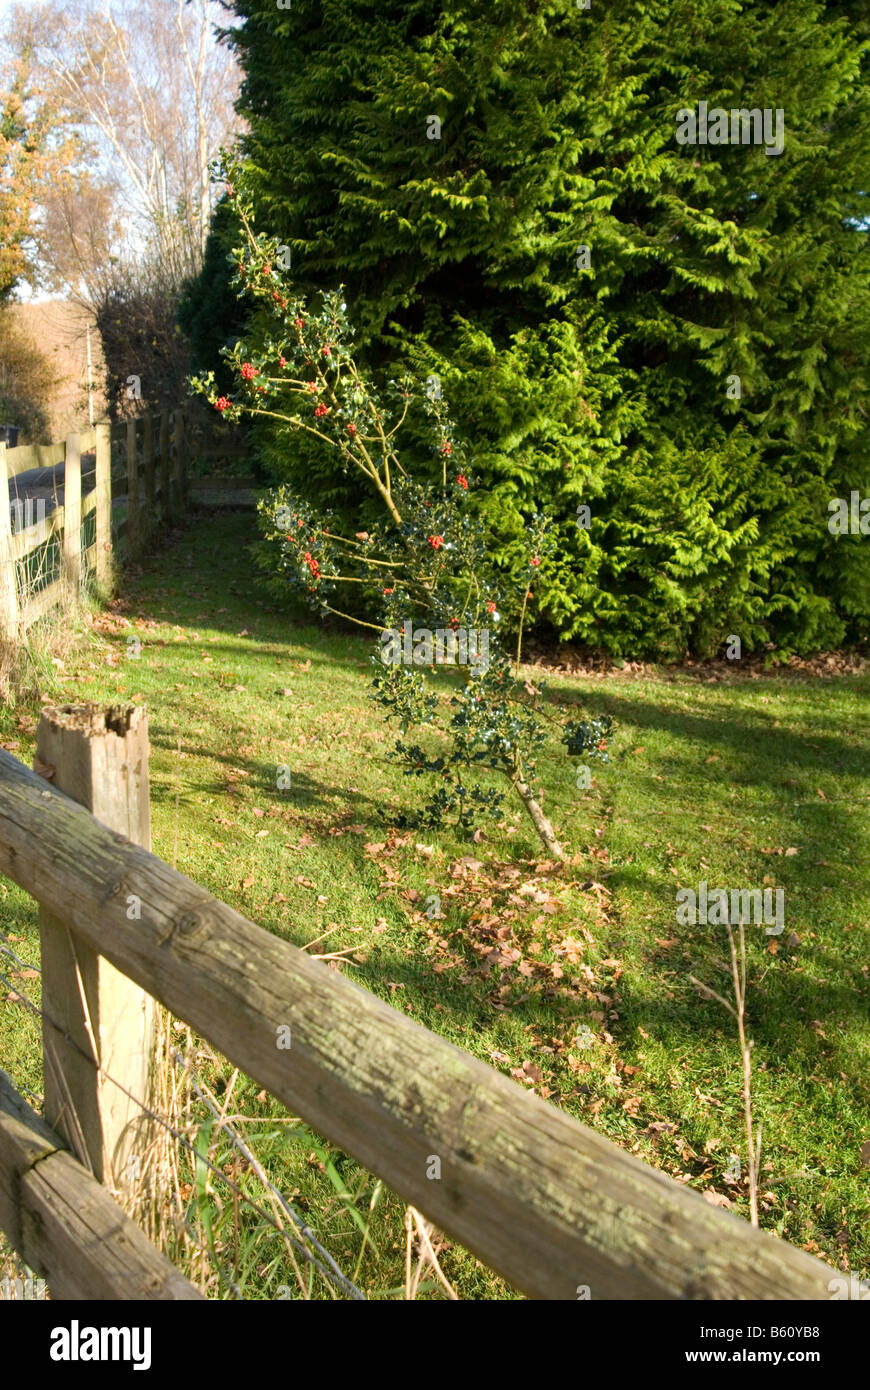 Un'immagine cerca su una recinzione di una piccola holly tree con bacche rosse sulla crescita e un grande Fern Tree dietro Foto Stock